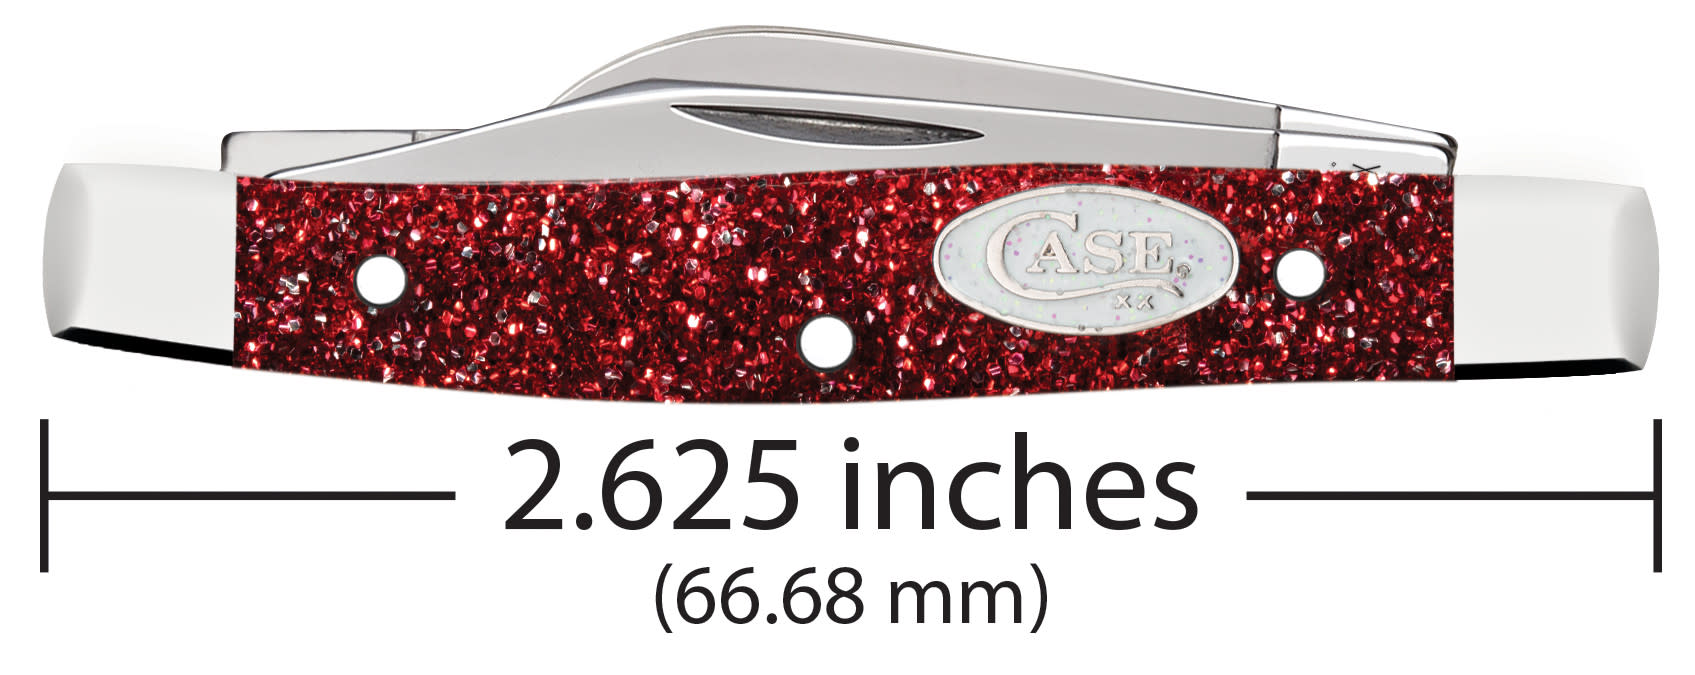 Ruby Stardust Kirinite® Small Stockman Knife Dimensions